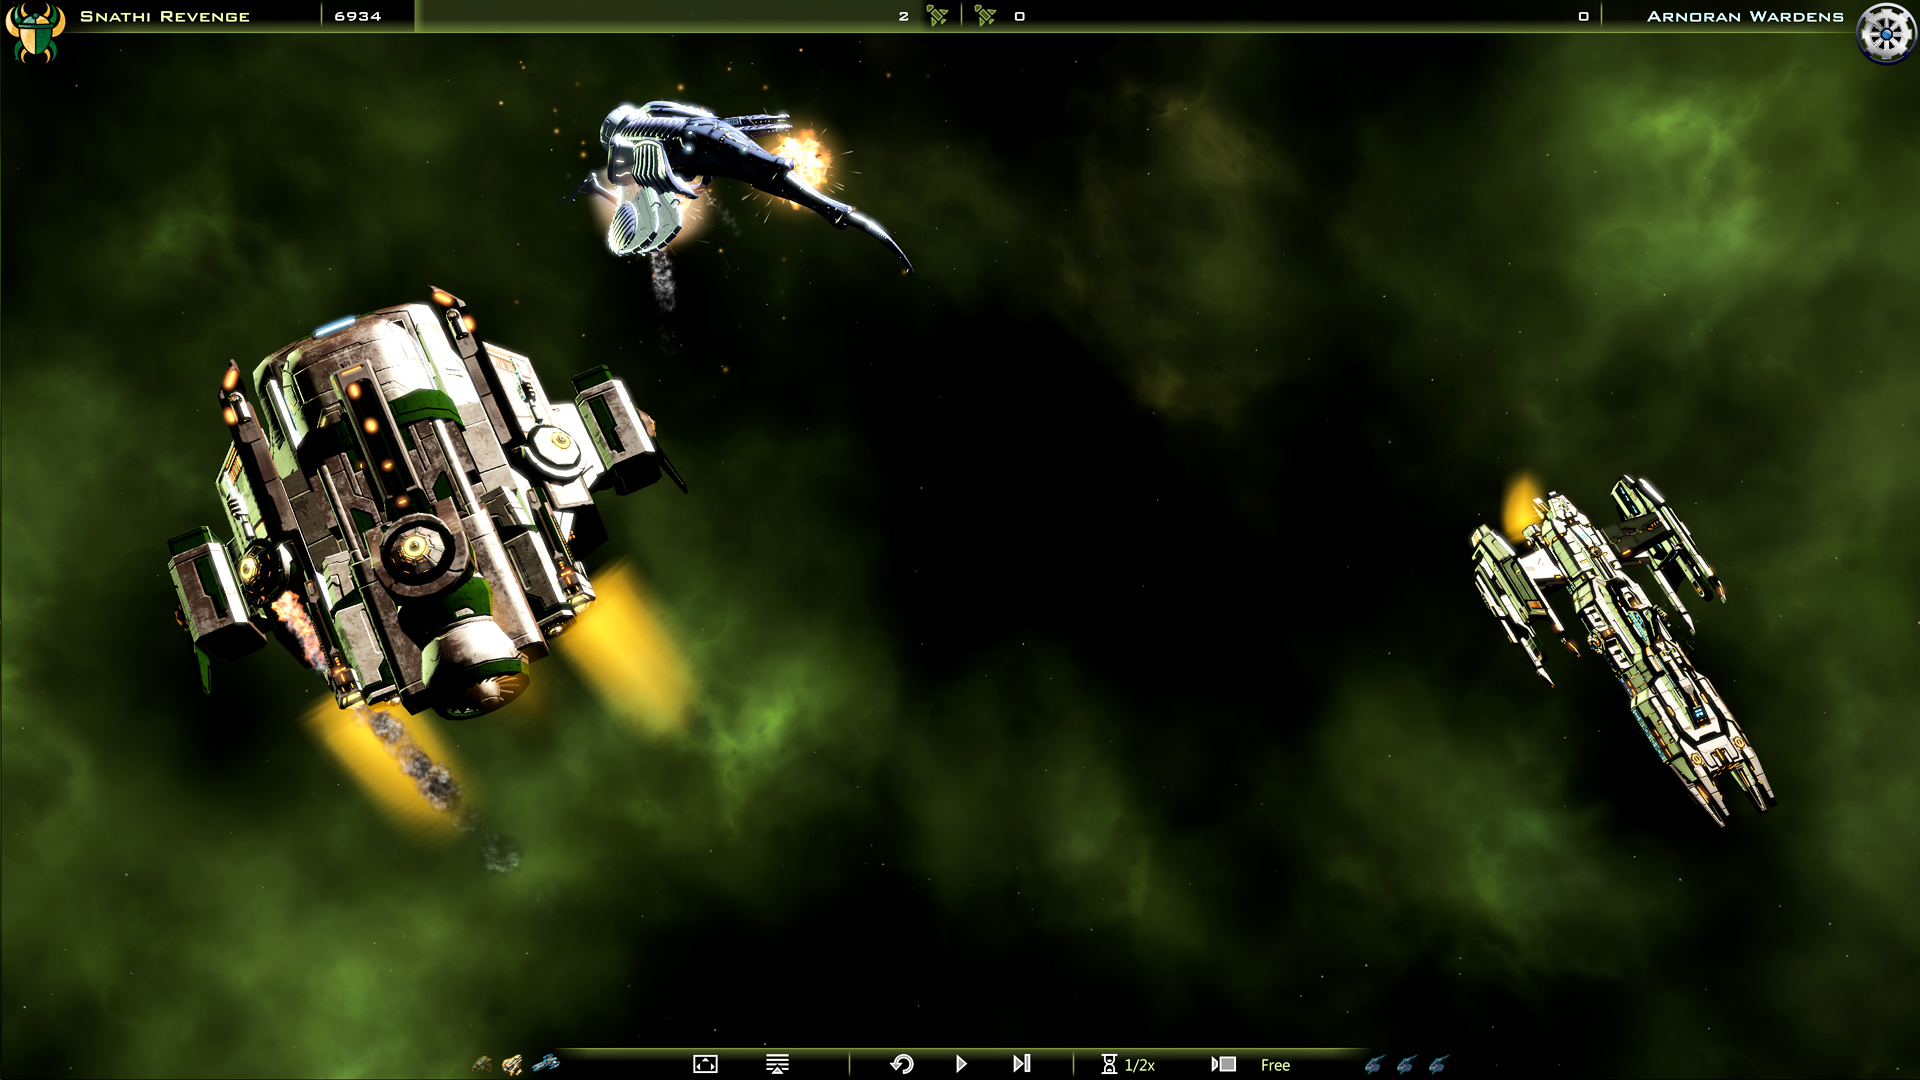 Galactic Civilizations III - Revenge of the Snathi DLC screenshot